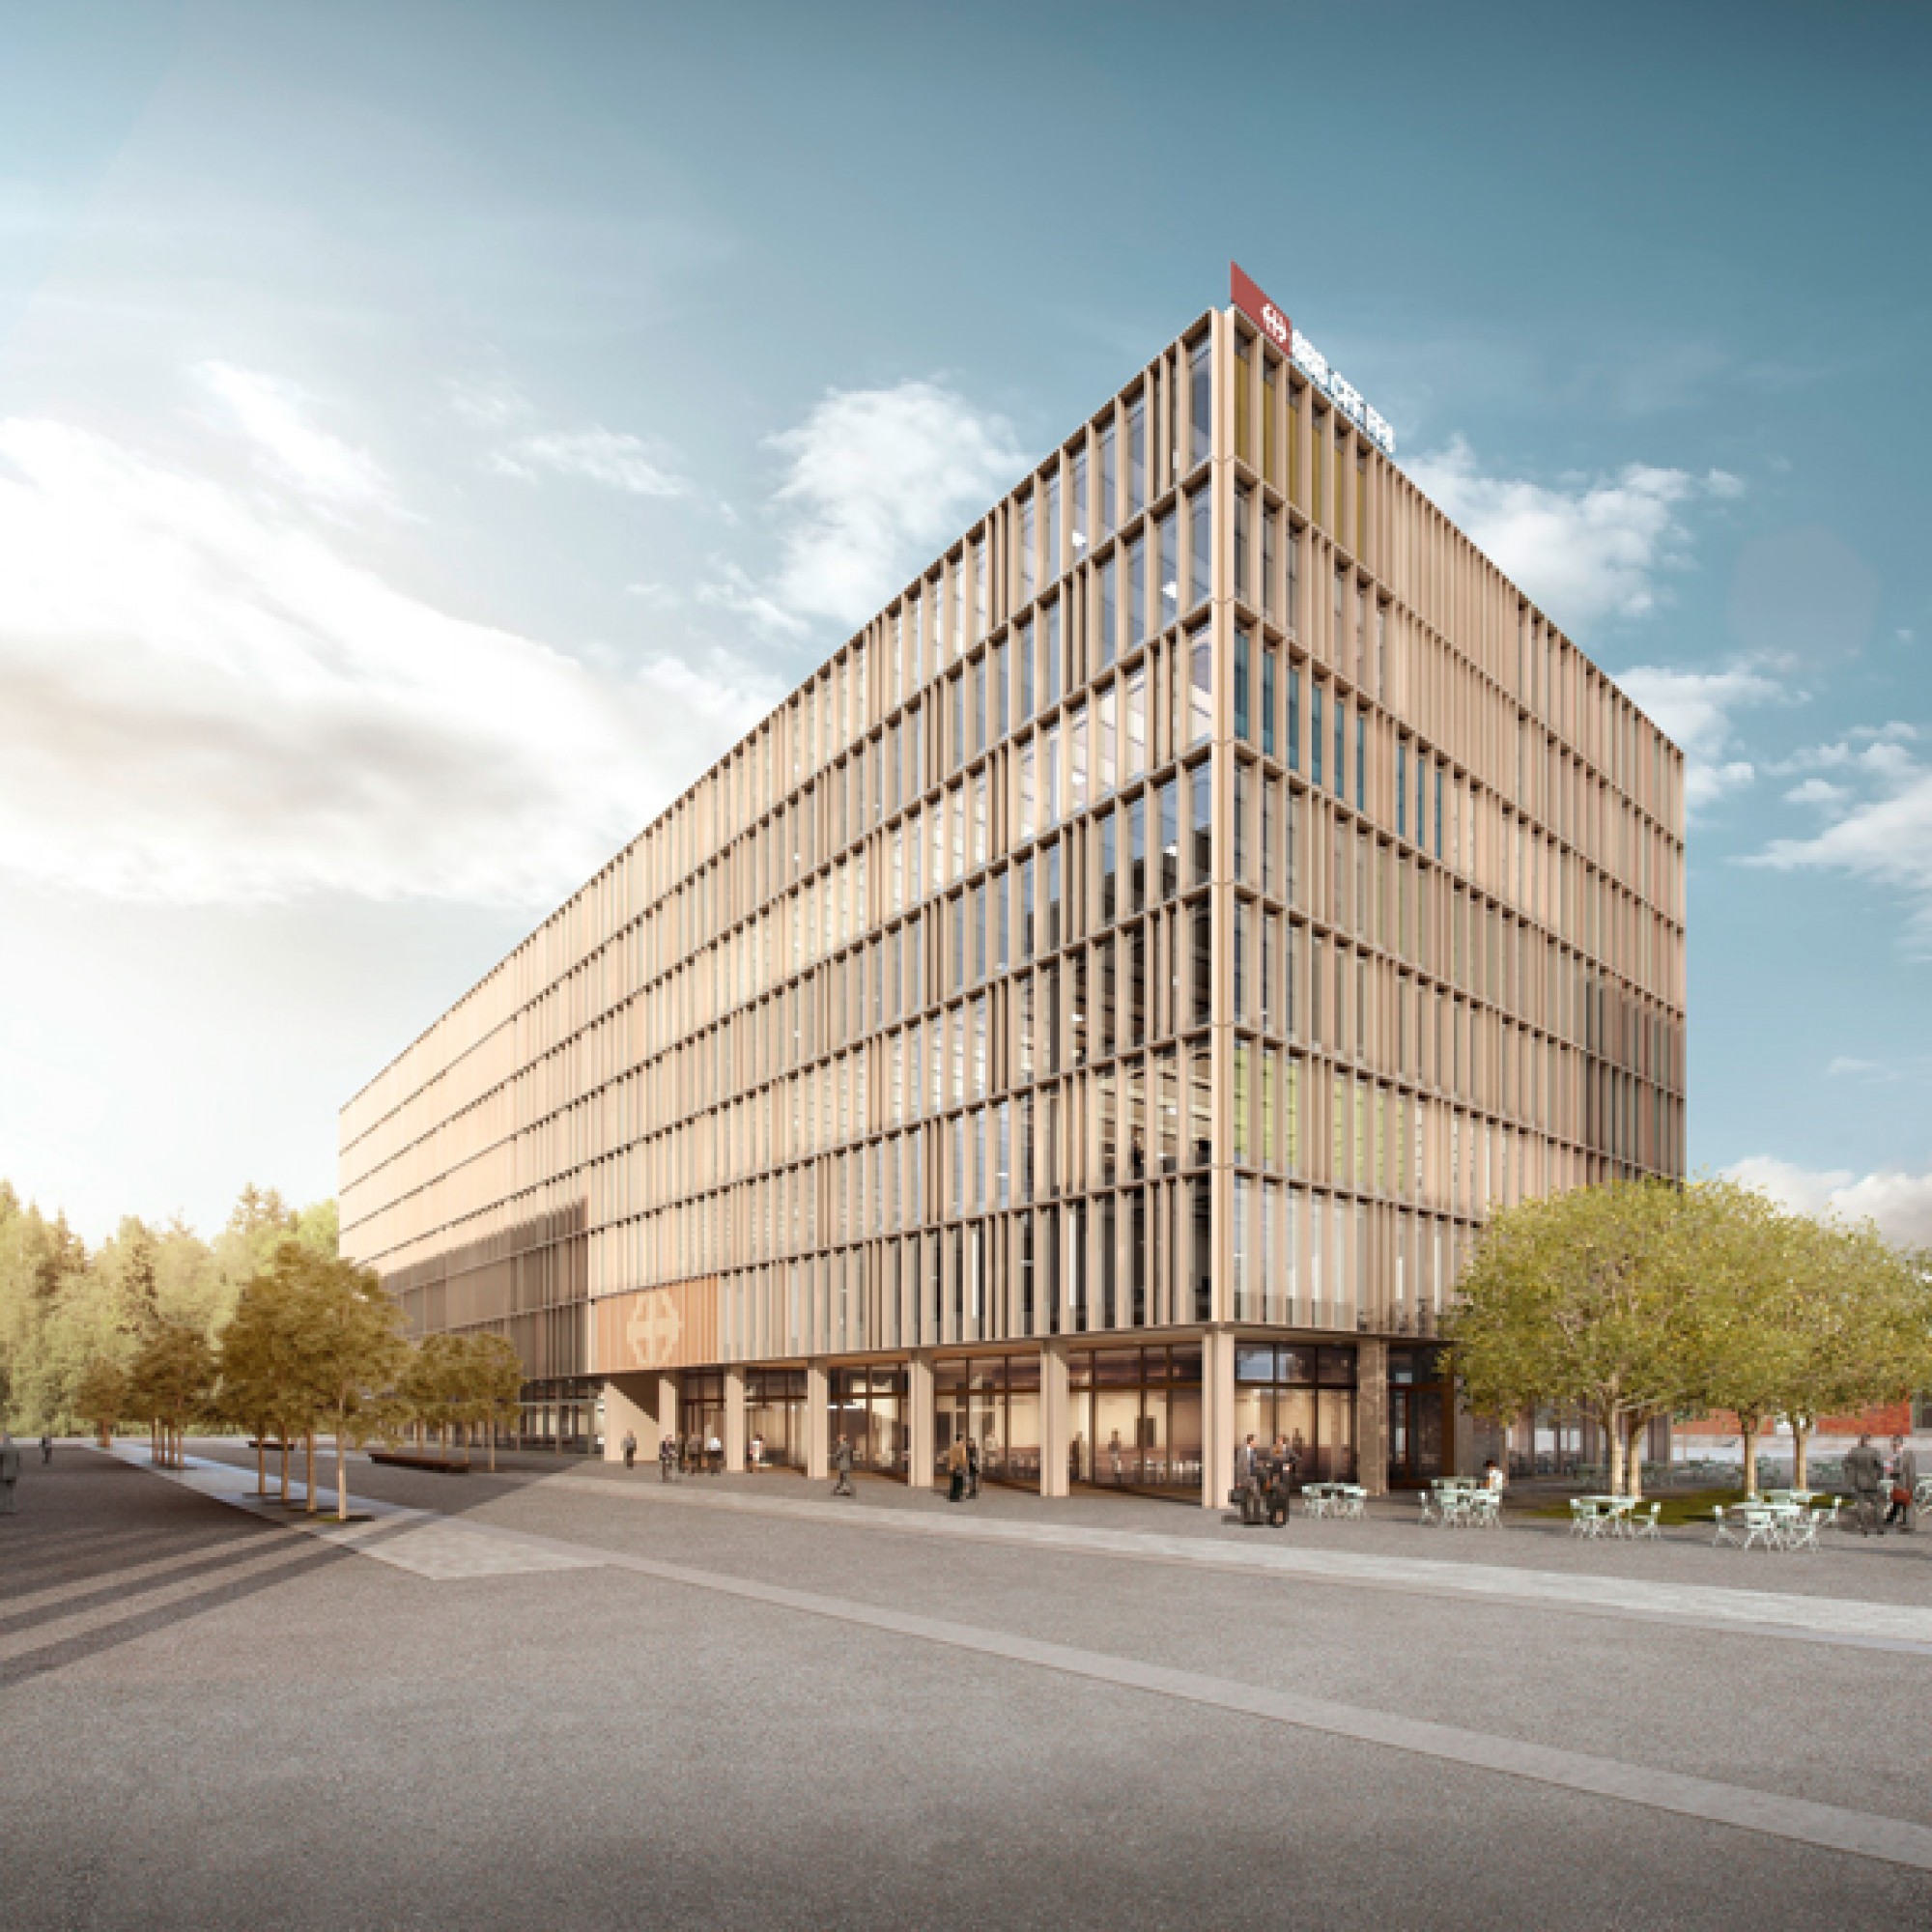 Künftig sollen alle IT-Büros im Raum Bern an einem Standort untergebracht werden. (zvg)